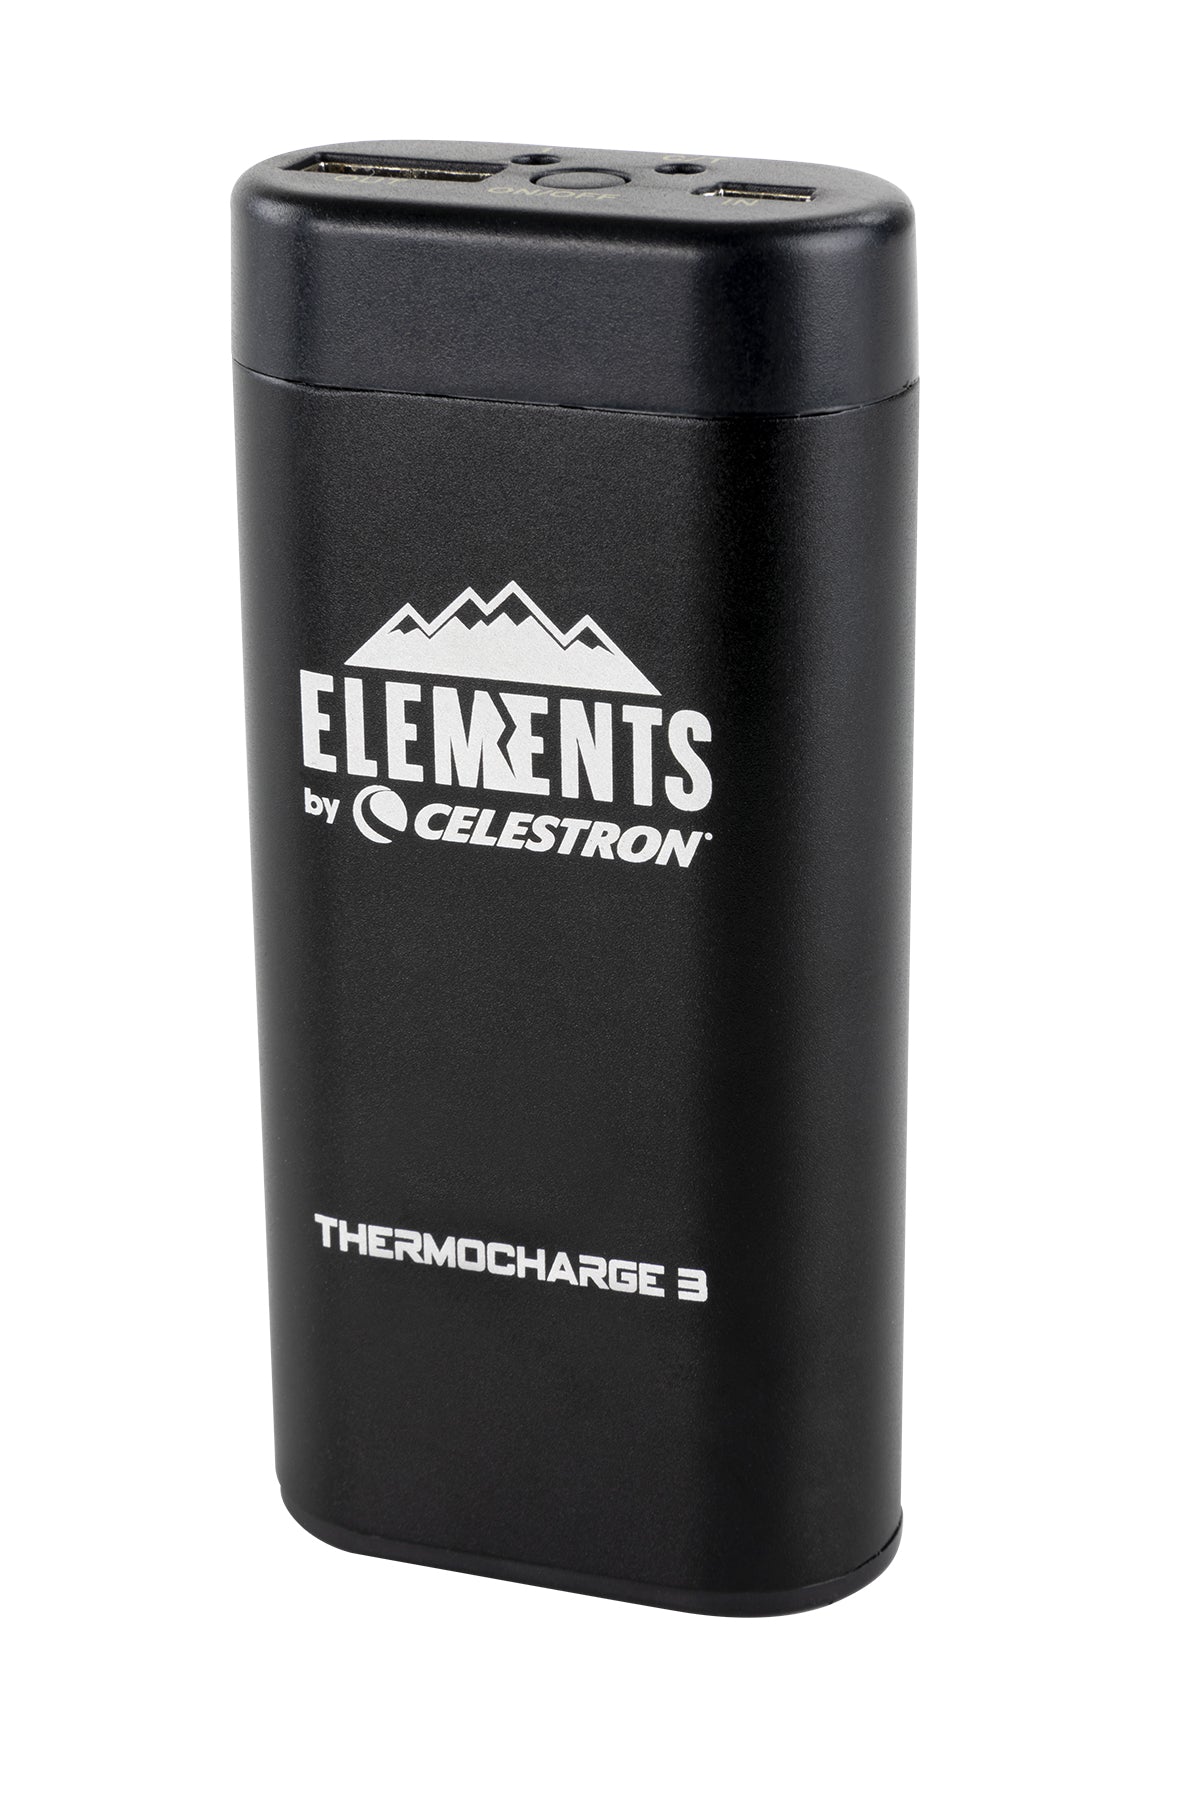 Celestron Elements FireCel 3-in-1 Gerät Powerbank Taschenlampe Taschenwärmer 